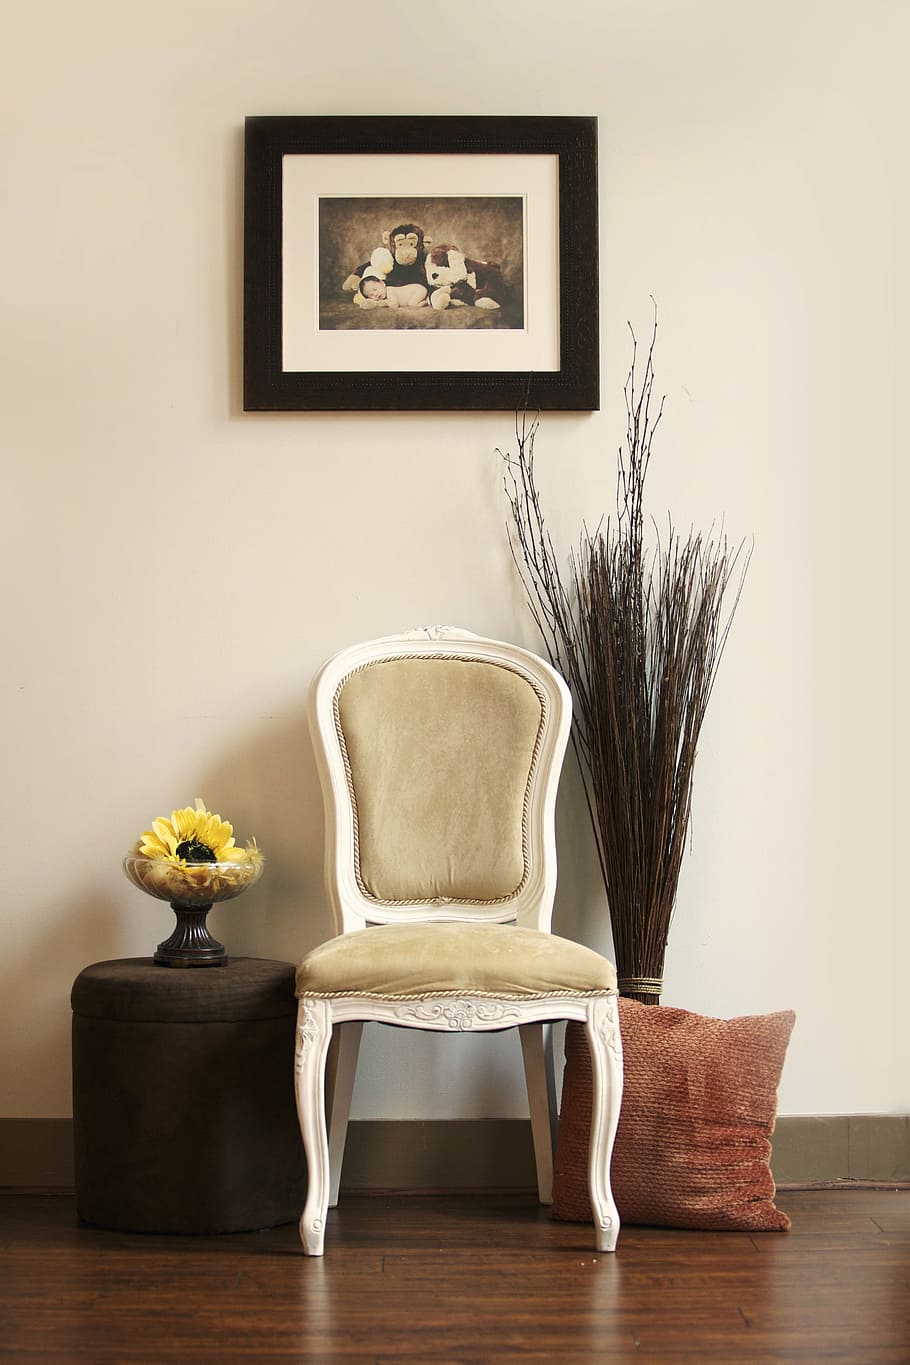 Blanco, de madera, enmarcado, acolchado, silla, pintura, colgado, pared, interior, habitación